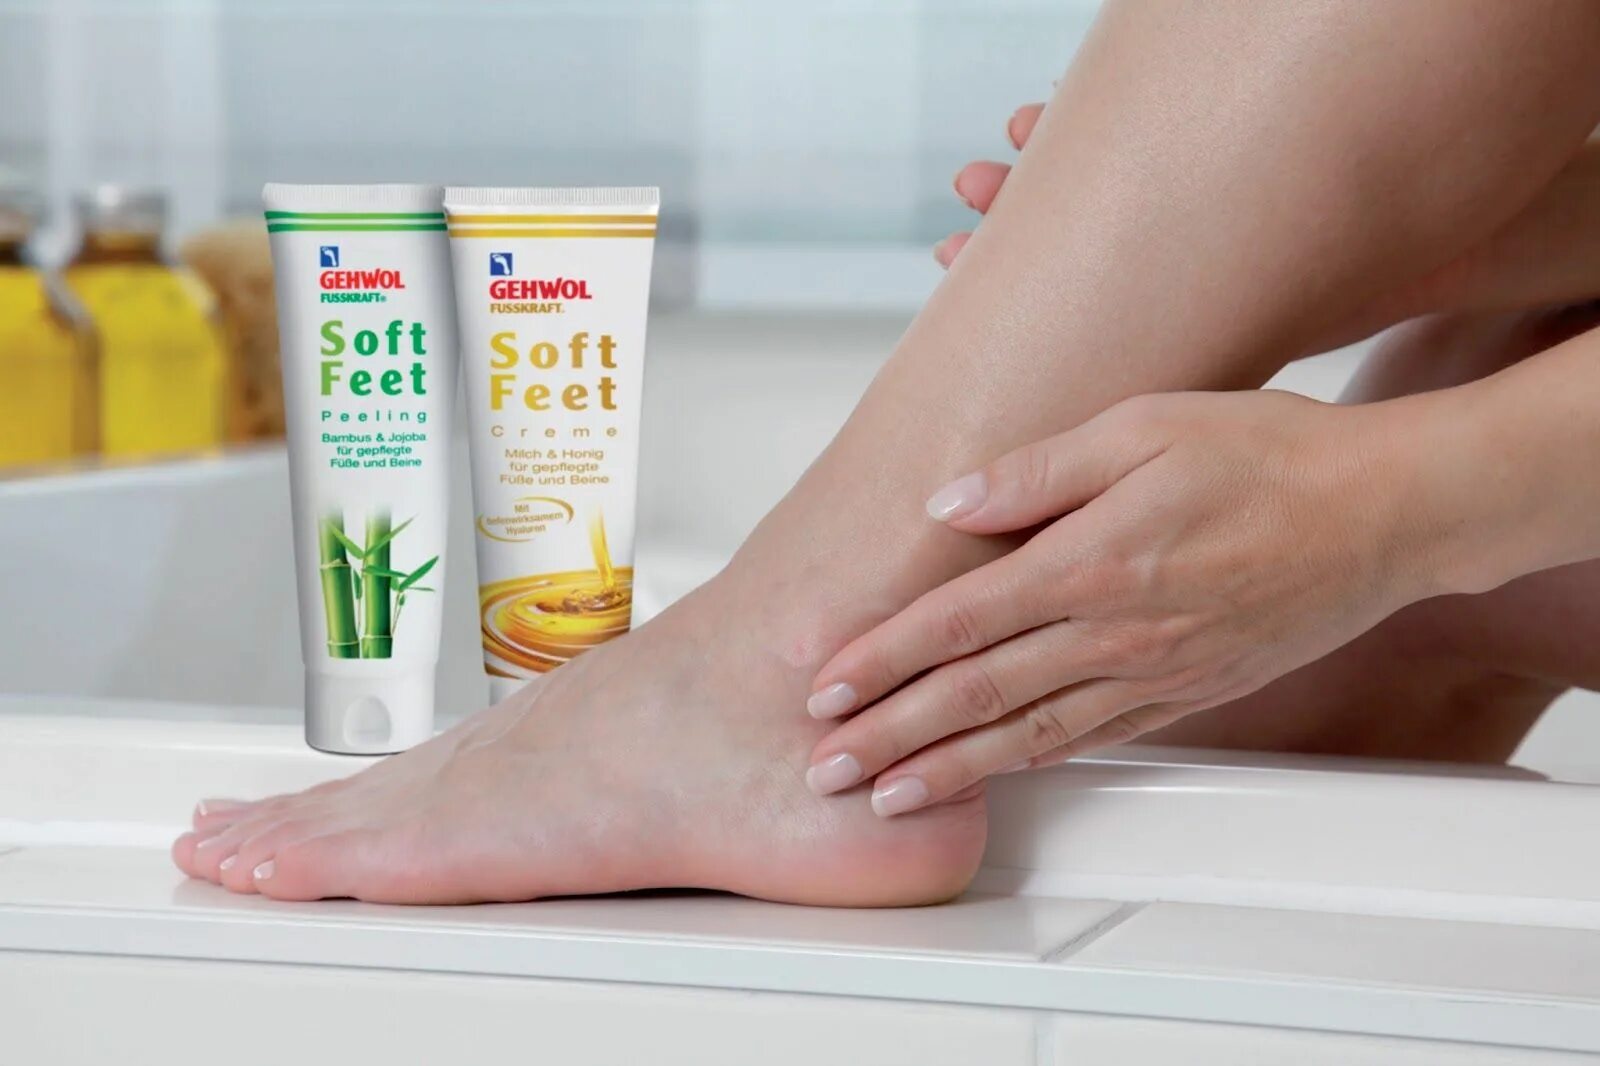 Слизать крем. Gehwol Soft feet Creme. Gehwol Gerlachs foot Cream крем для уставших ног 55мл. Пилинг бамбук и жожоба - Gehwol (Геволь) Soft feet peeling 500ml. Ношгипри сахарншом диабетше.